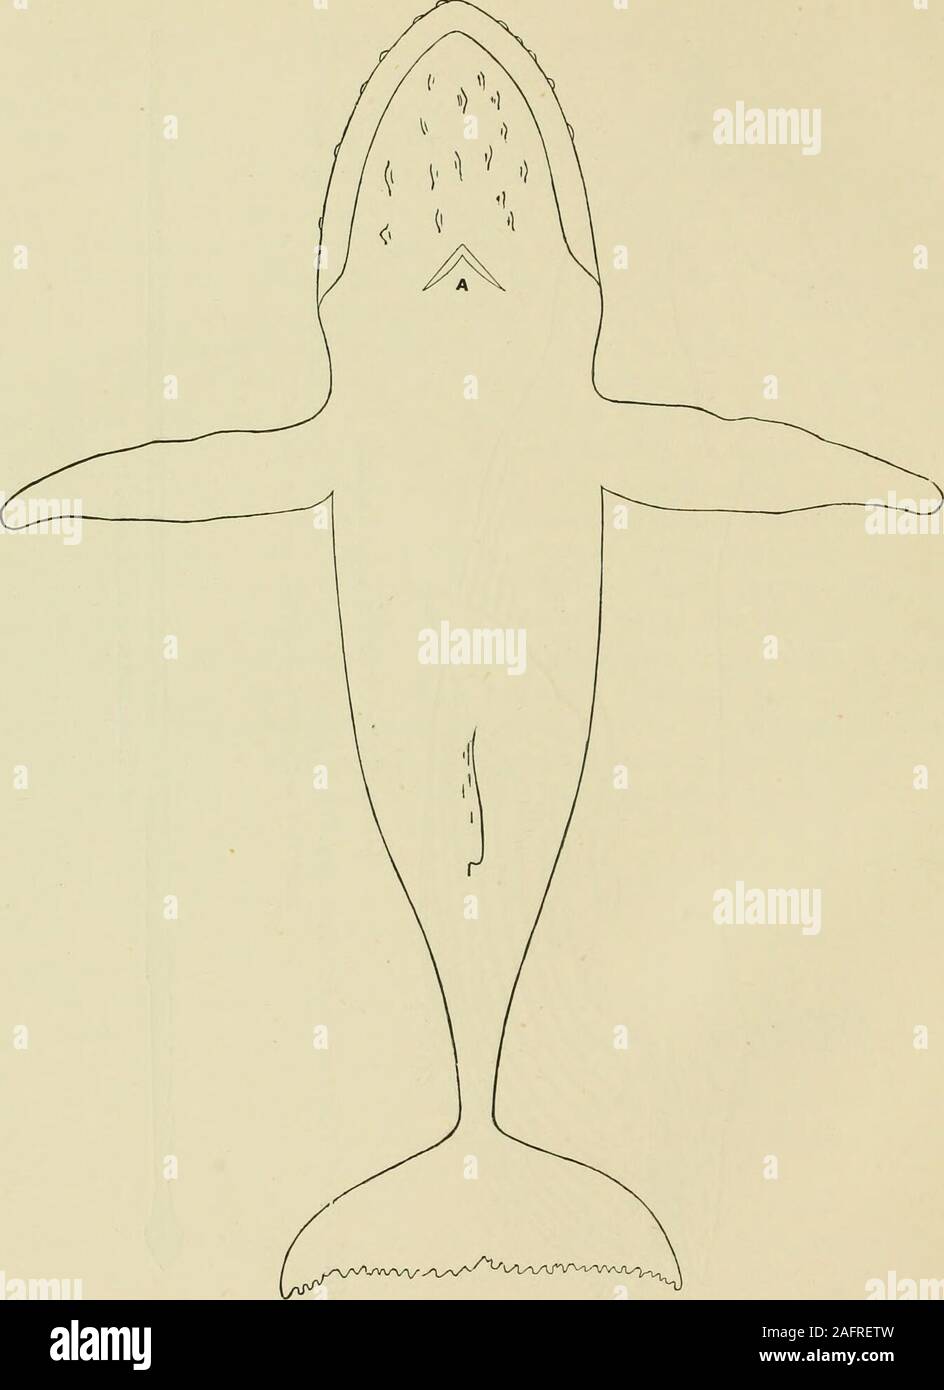 . I mammiferi marini della costa nord-occidentale del Nord America, descritto e illustrato; insieme con un account americano di whale-pesca. ?5 &LT;5 •3 8 §^ O&LT; ffl Ph 42 ^ ^ 0 k ^ Si w ?si " •^ a ^ ?J h k £ 3 *s Ck ?^J 3 -2 8 5a a. 2 o 0 a DC &lt; ho az&LT; £ 48 mammiferi marini della costa nord-occidentale. PUTLINES DI HuMPBACK, dall'alto. n & Foto Stock